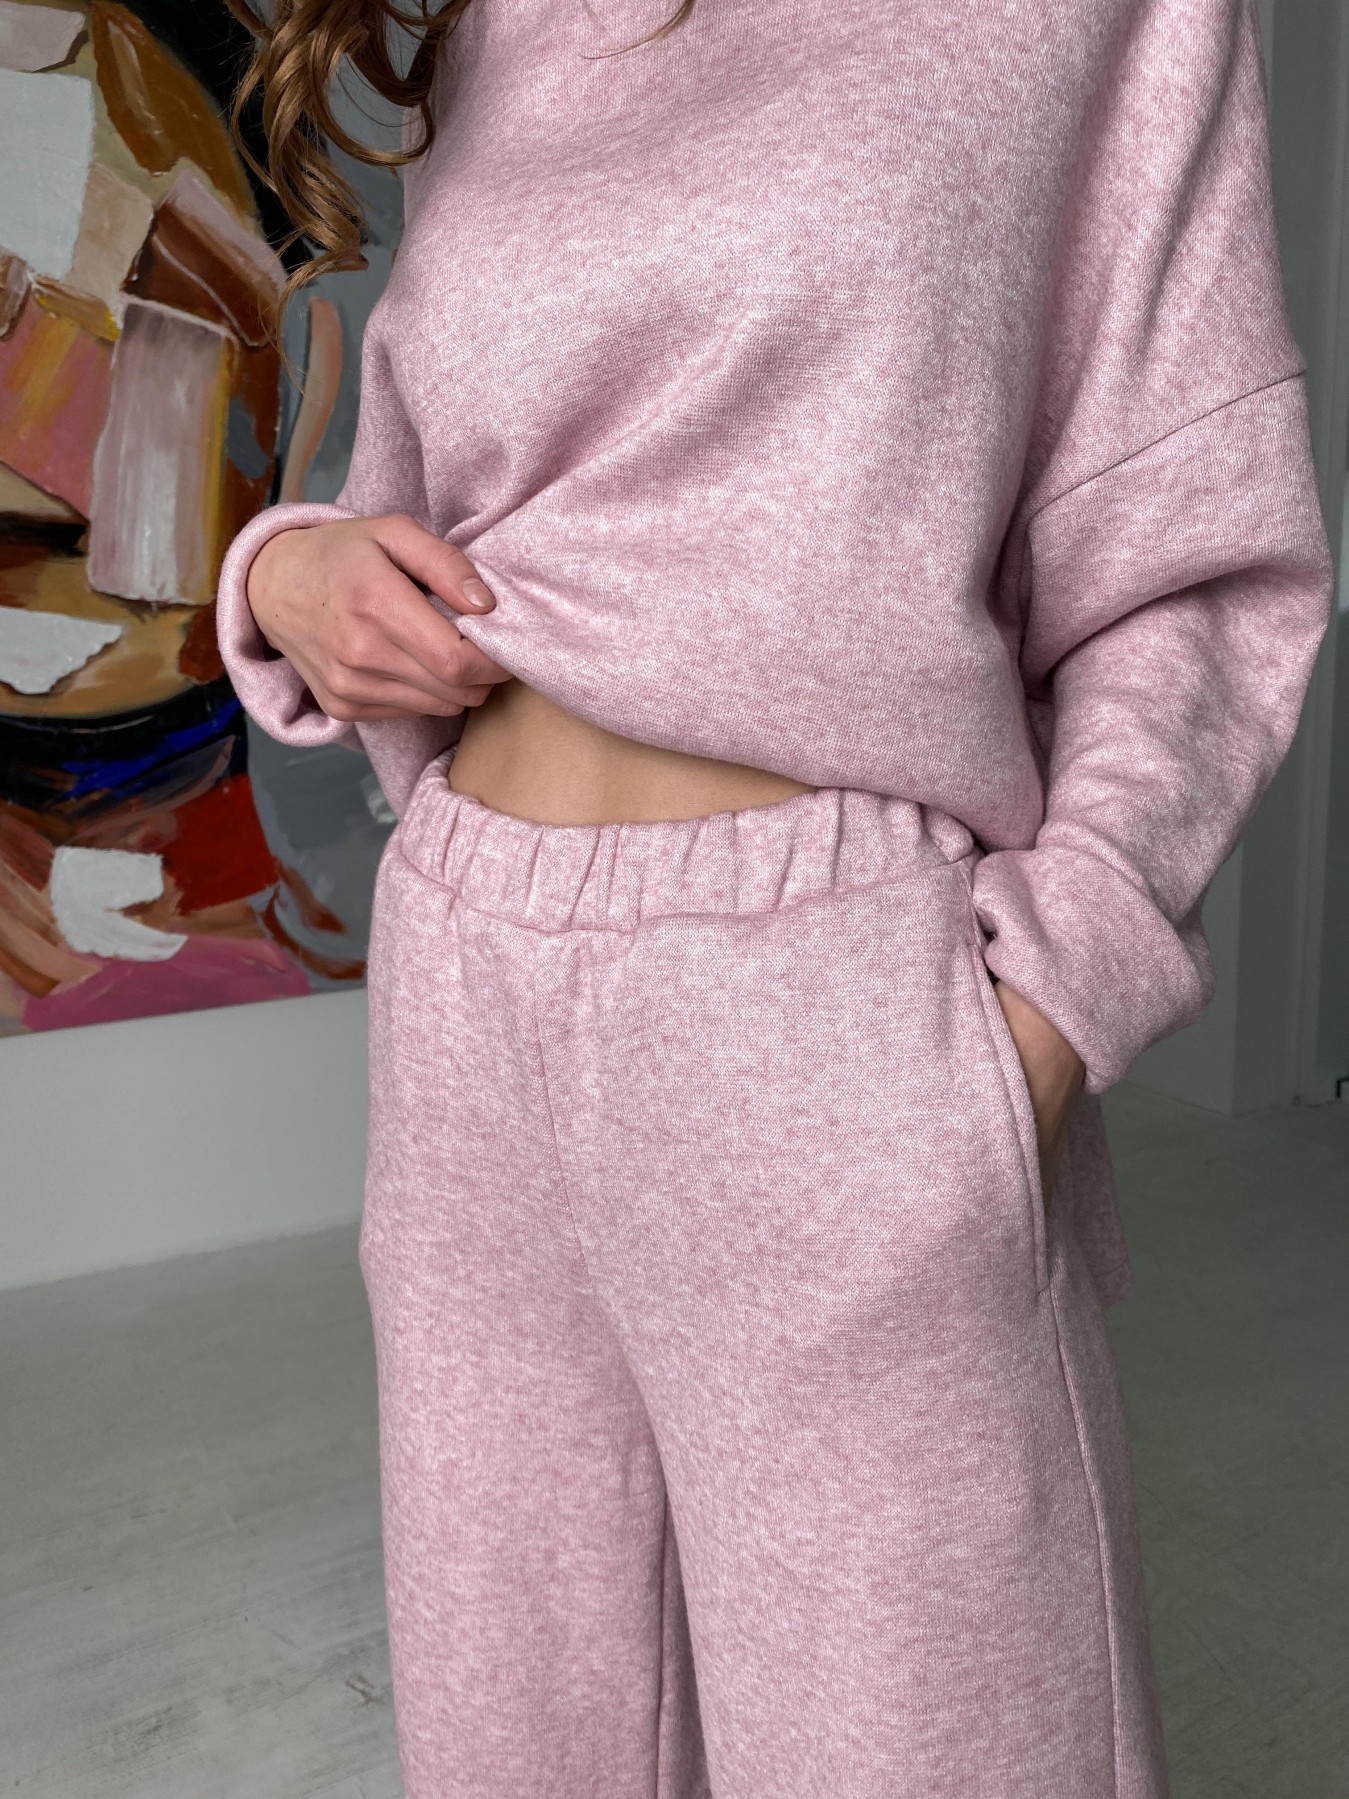 Лав Ю костюм из ангоры 10531 АРТ. 46872 Цвет: Розовый 2 меланж - фото 2, интернет магазин tm-modus.ru